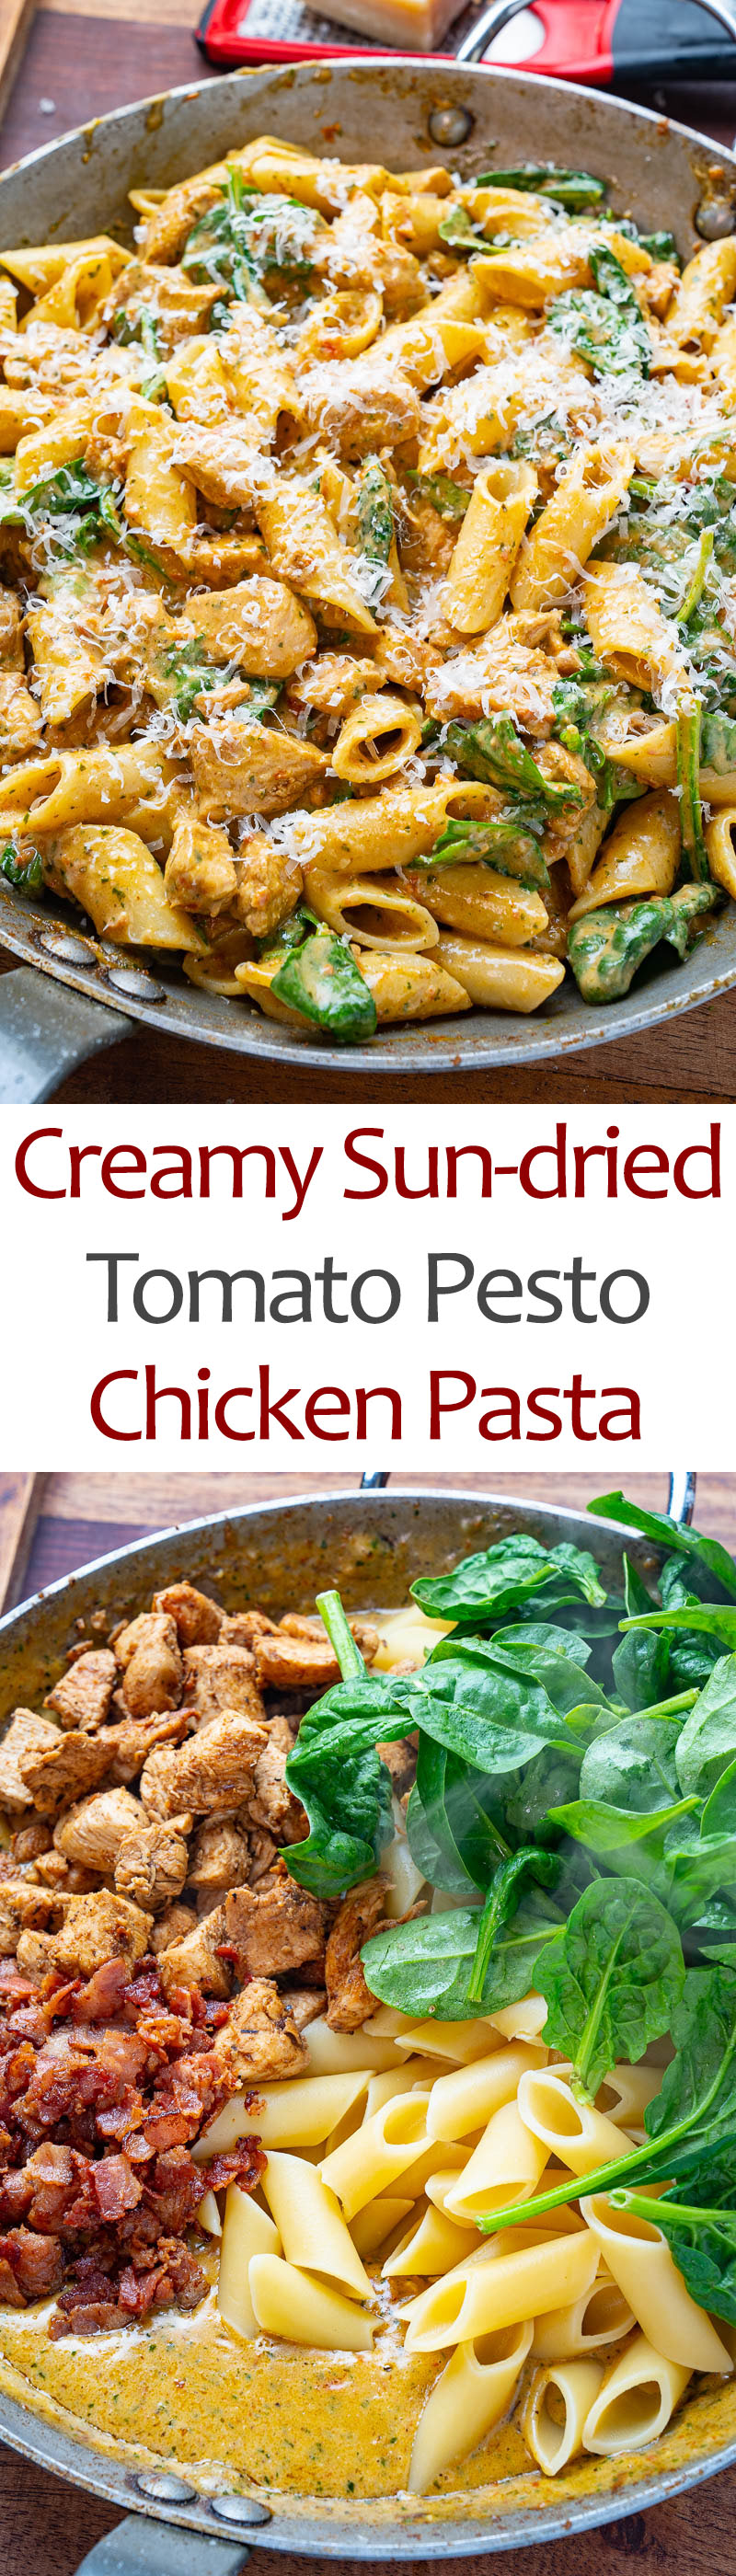 Creamy Sun-dried Tomato Pesto Pasta with Chicken